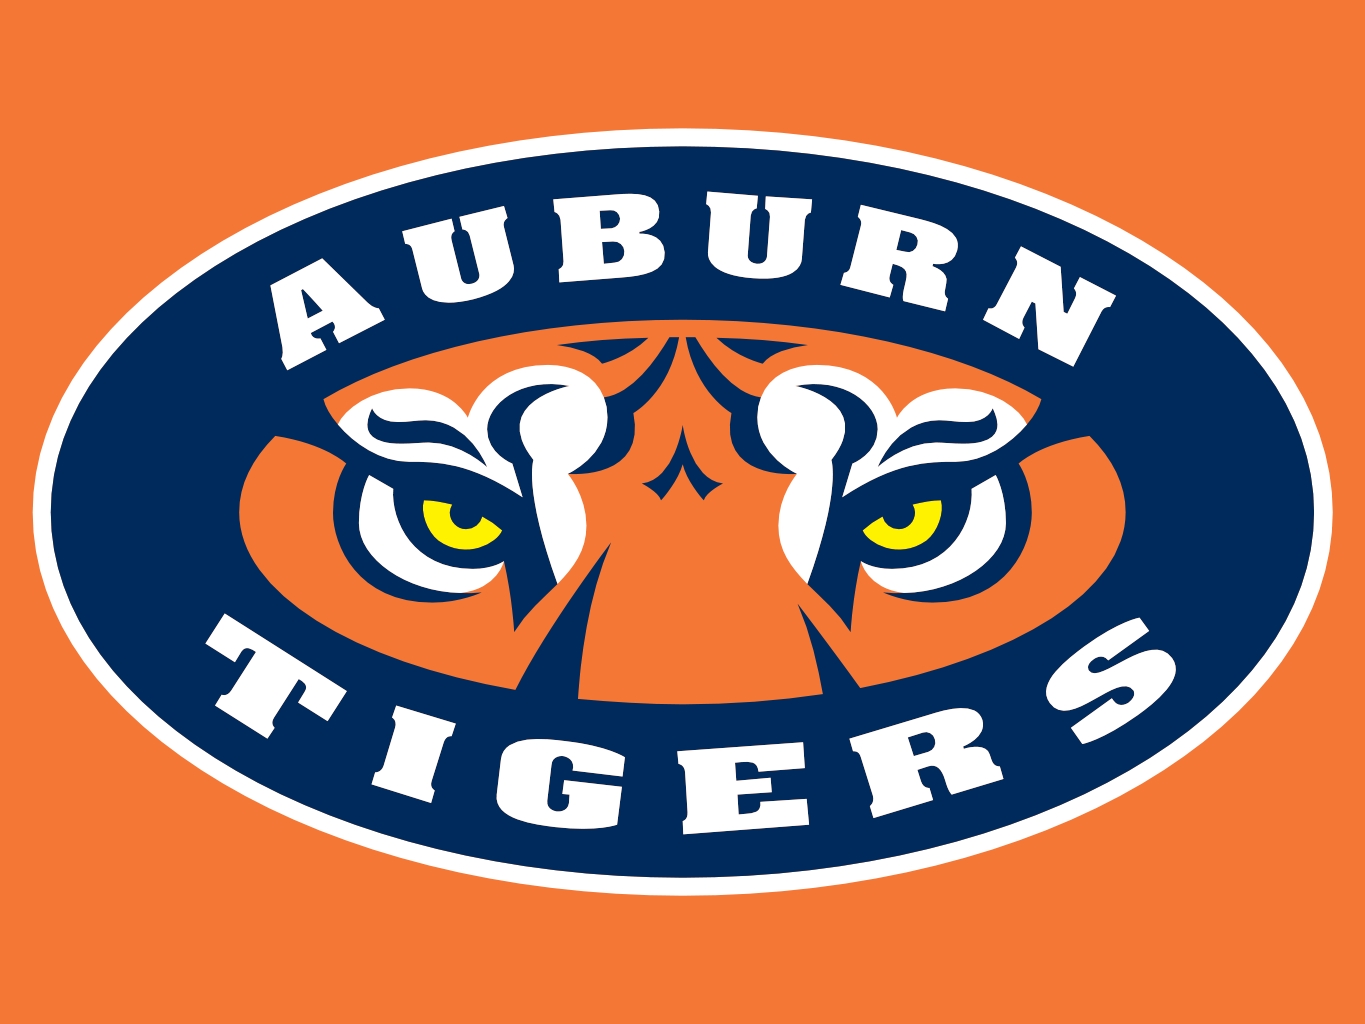 Auburn names Gus Malzahn as football coach – The Trussville Tribune